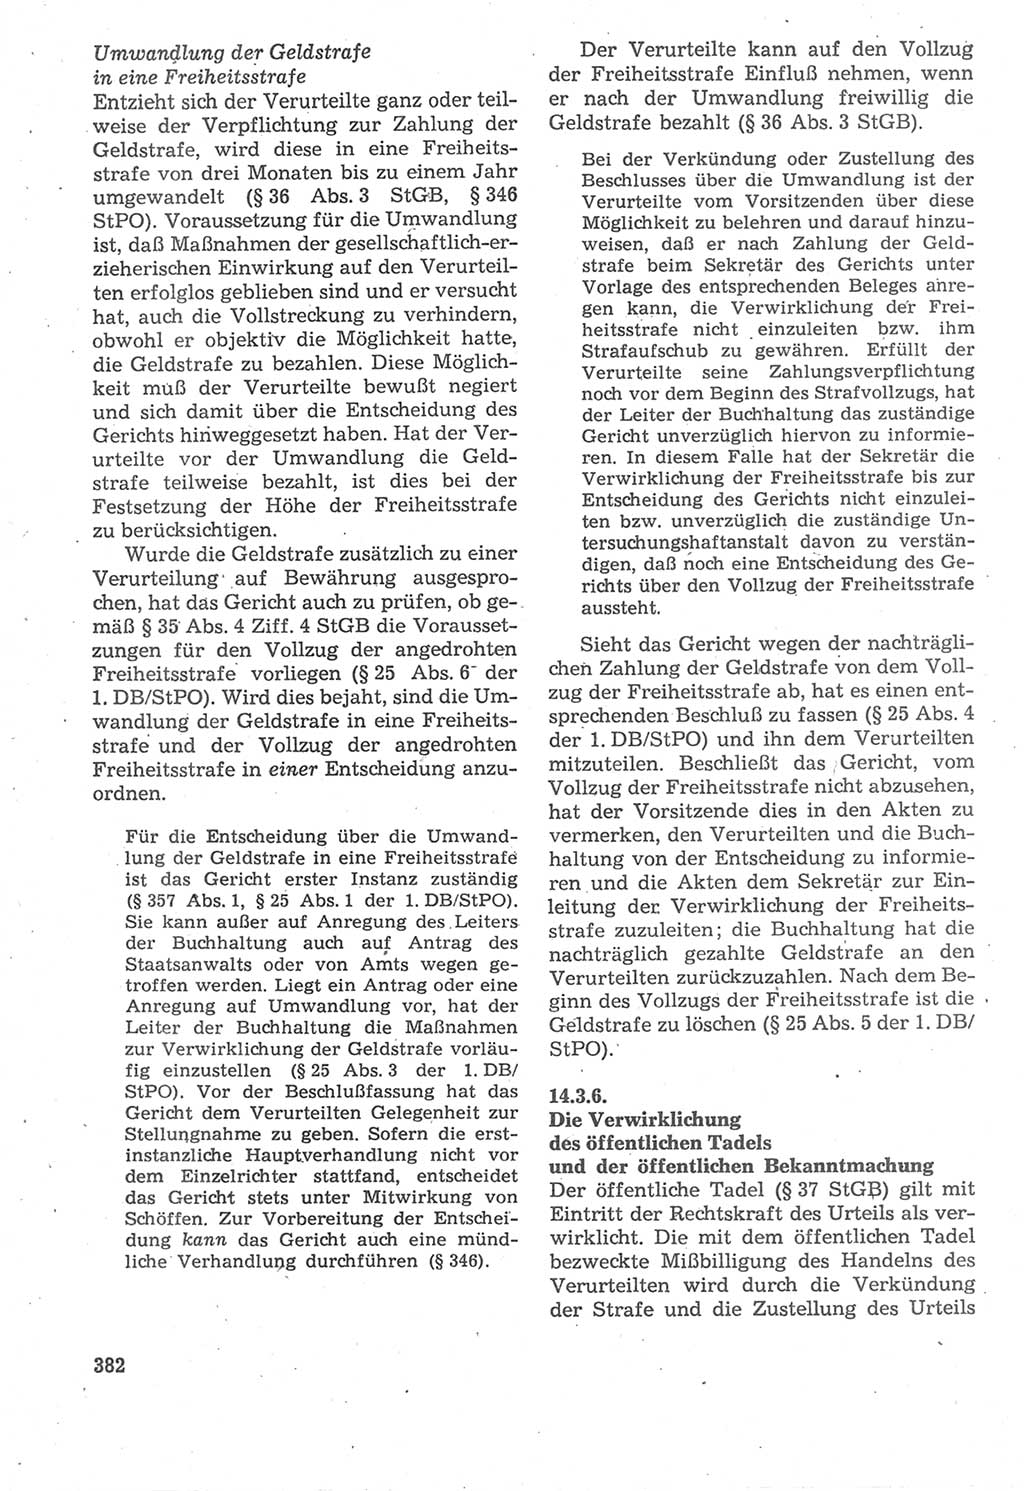 Strafverfahrensrecht [Deutsche Demokratische Republik (DDR)], Lehrbuch 1987, Seite 382 (Strafverf.-R. DDR Lb. 1987, S. 382)